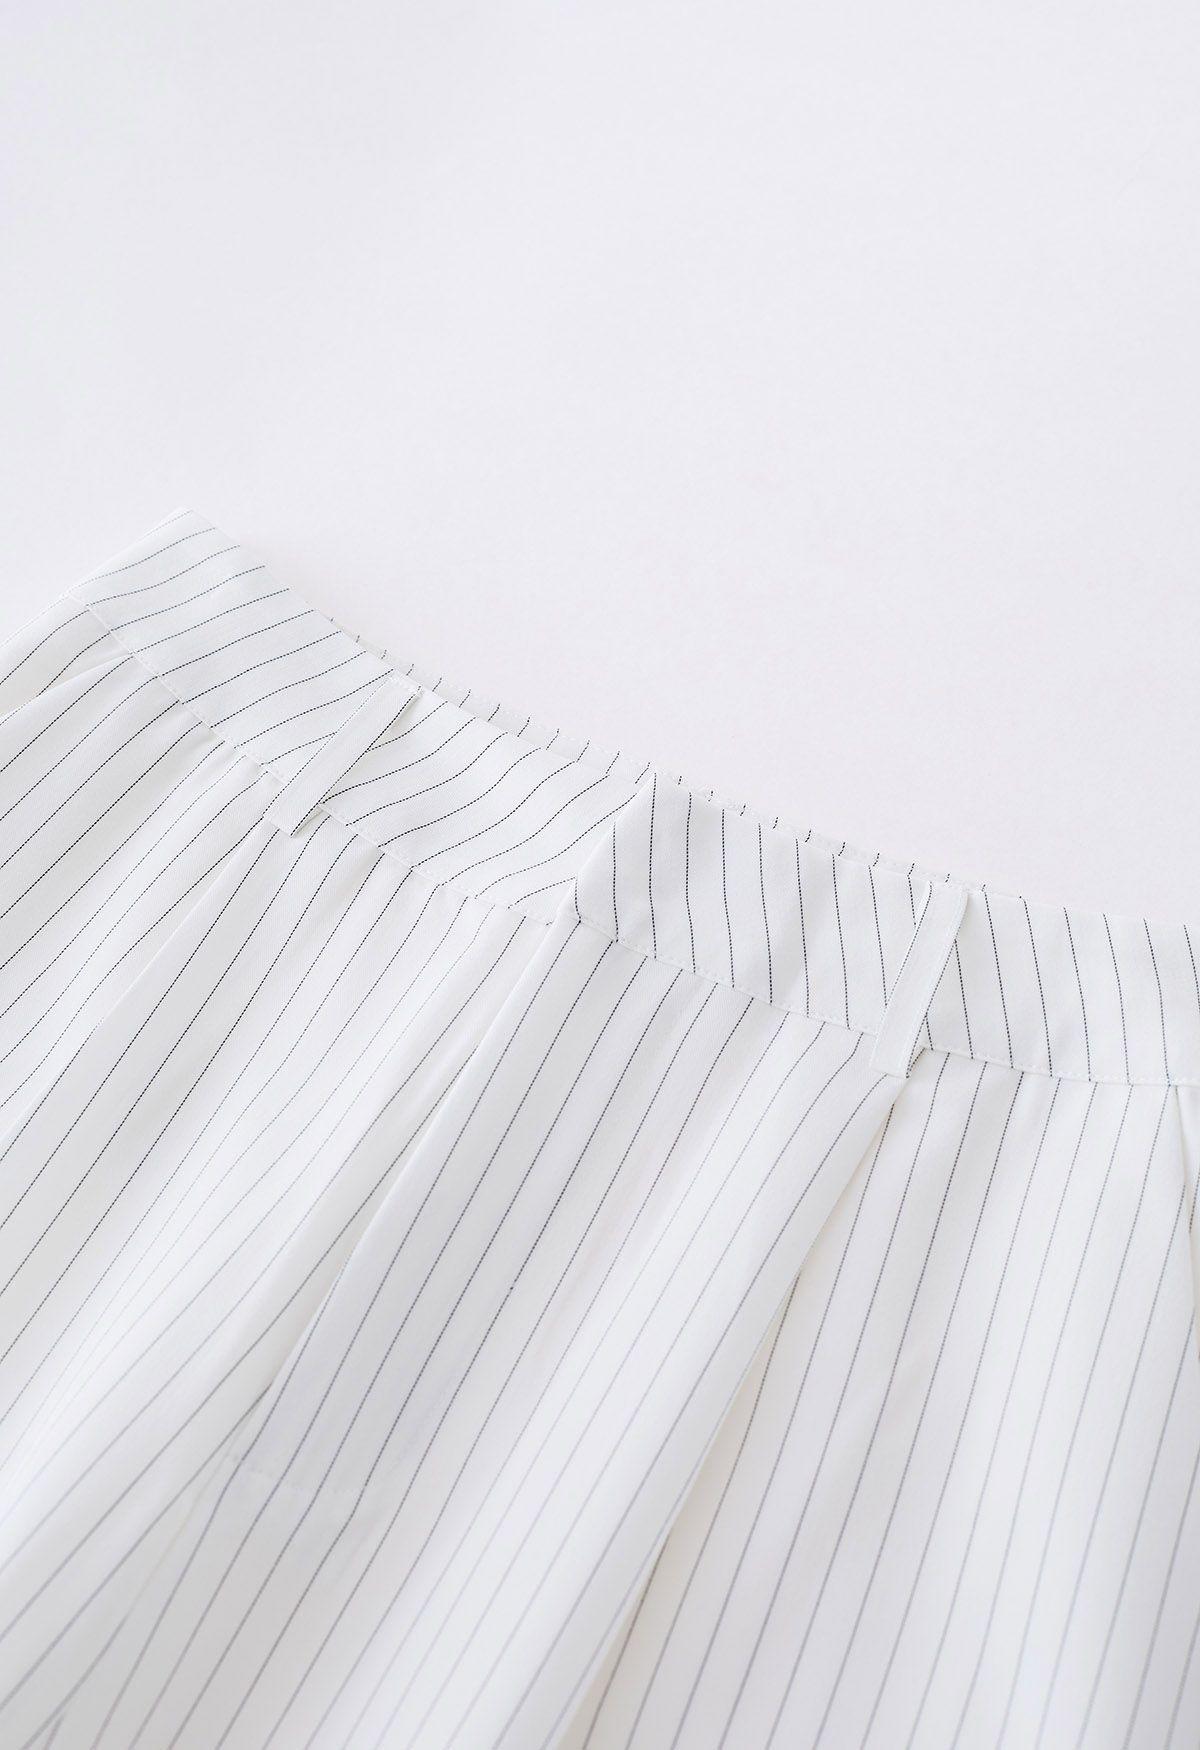 Vertical Stripe Straight-Leg Pants in White